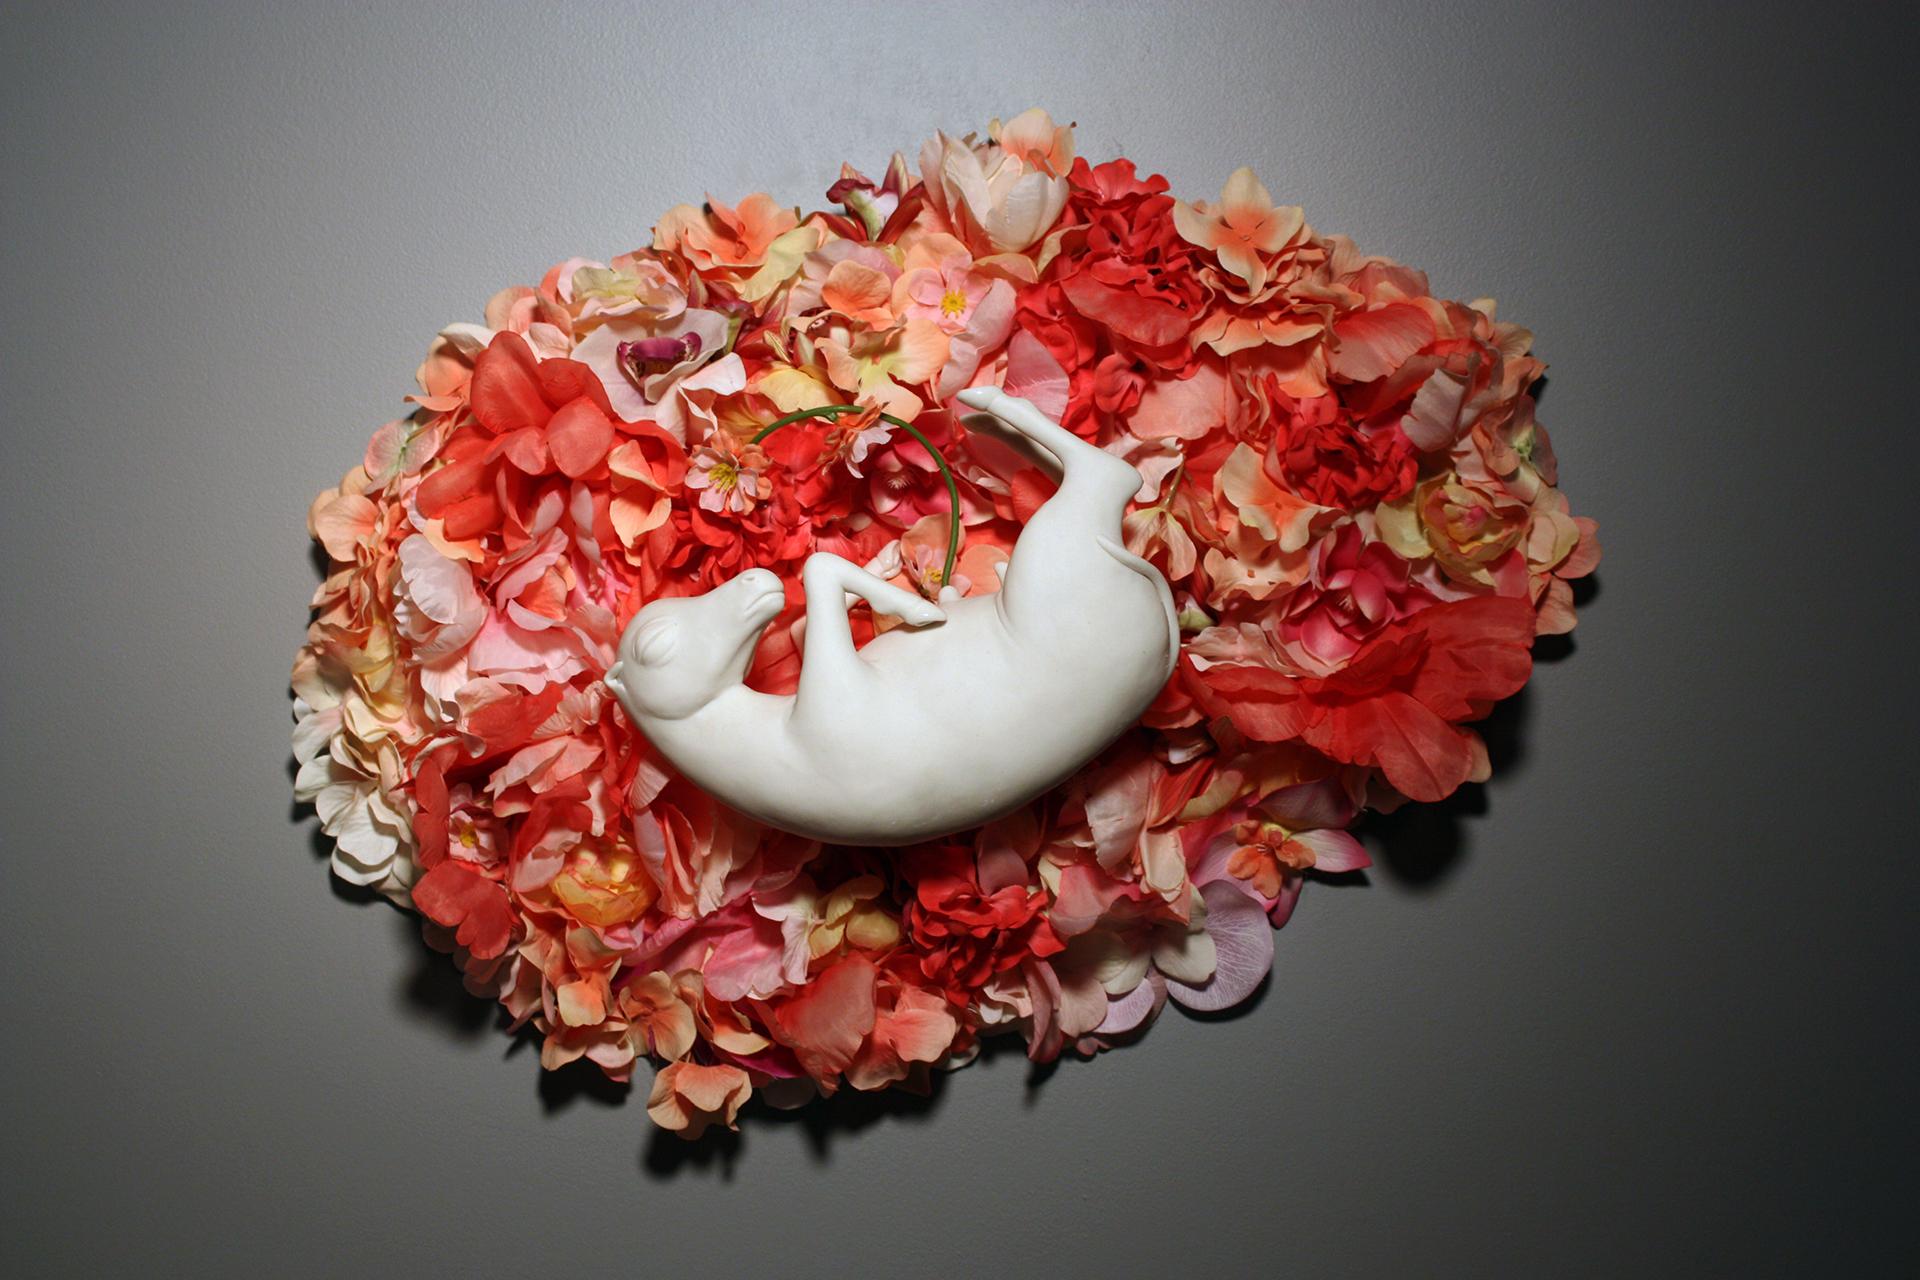 Diese Porzellanpferd-Wandskulptur wurde von der New Yorker Künstlerin Bethany Krull in Handarbeit und ohne Gussformen hergestellt und schwebt friedlich in einem schoßartigen Nest aus rosa Seidenblumen. 